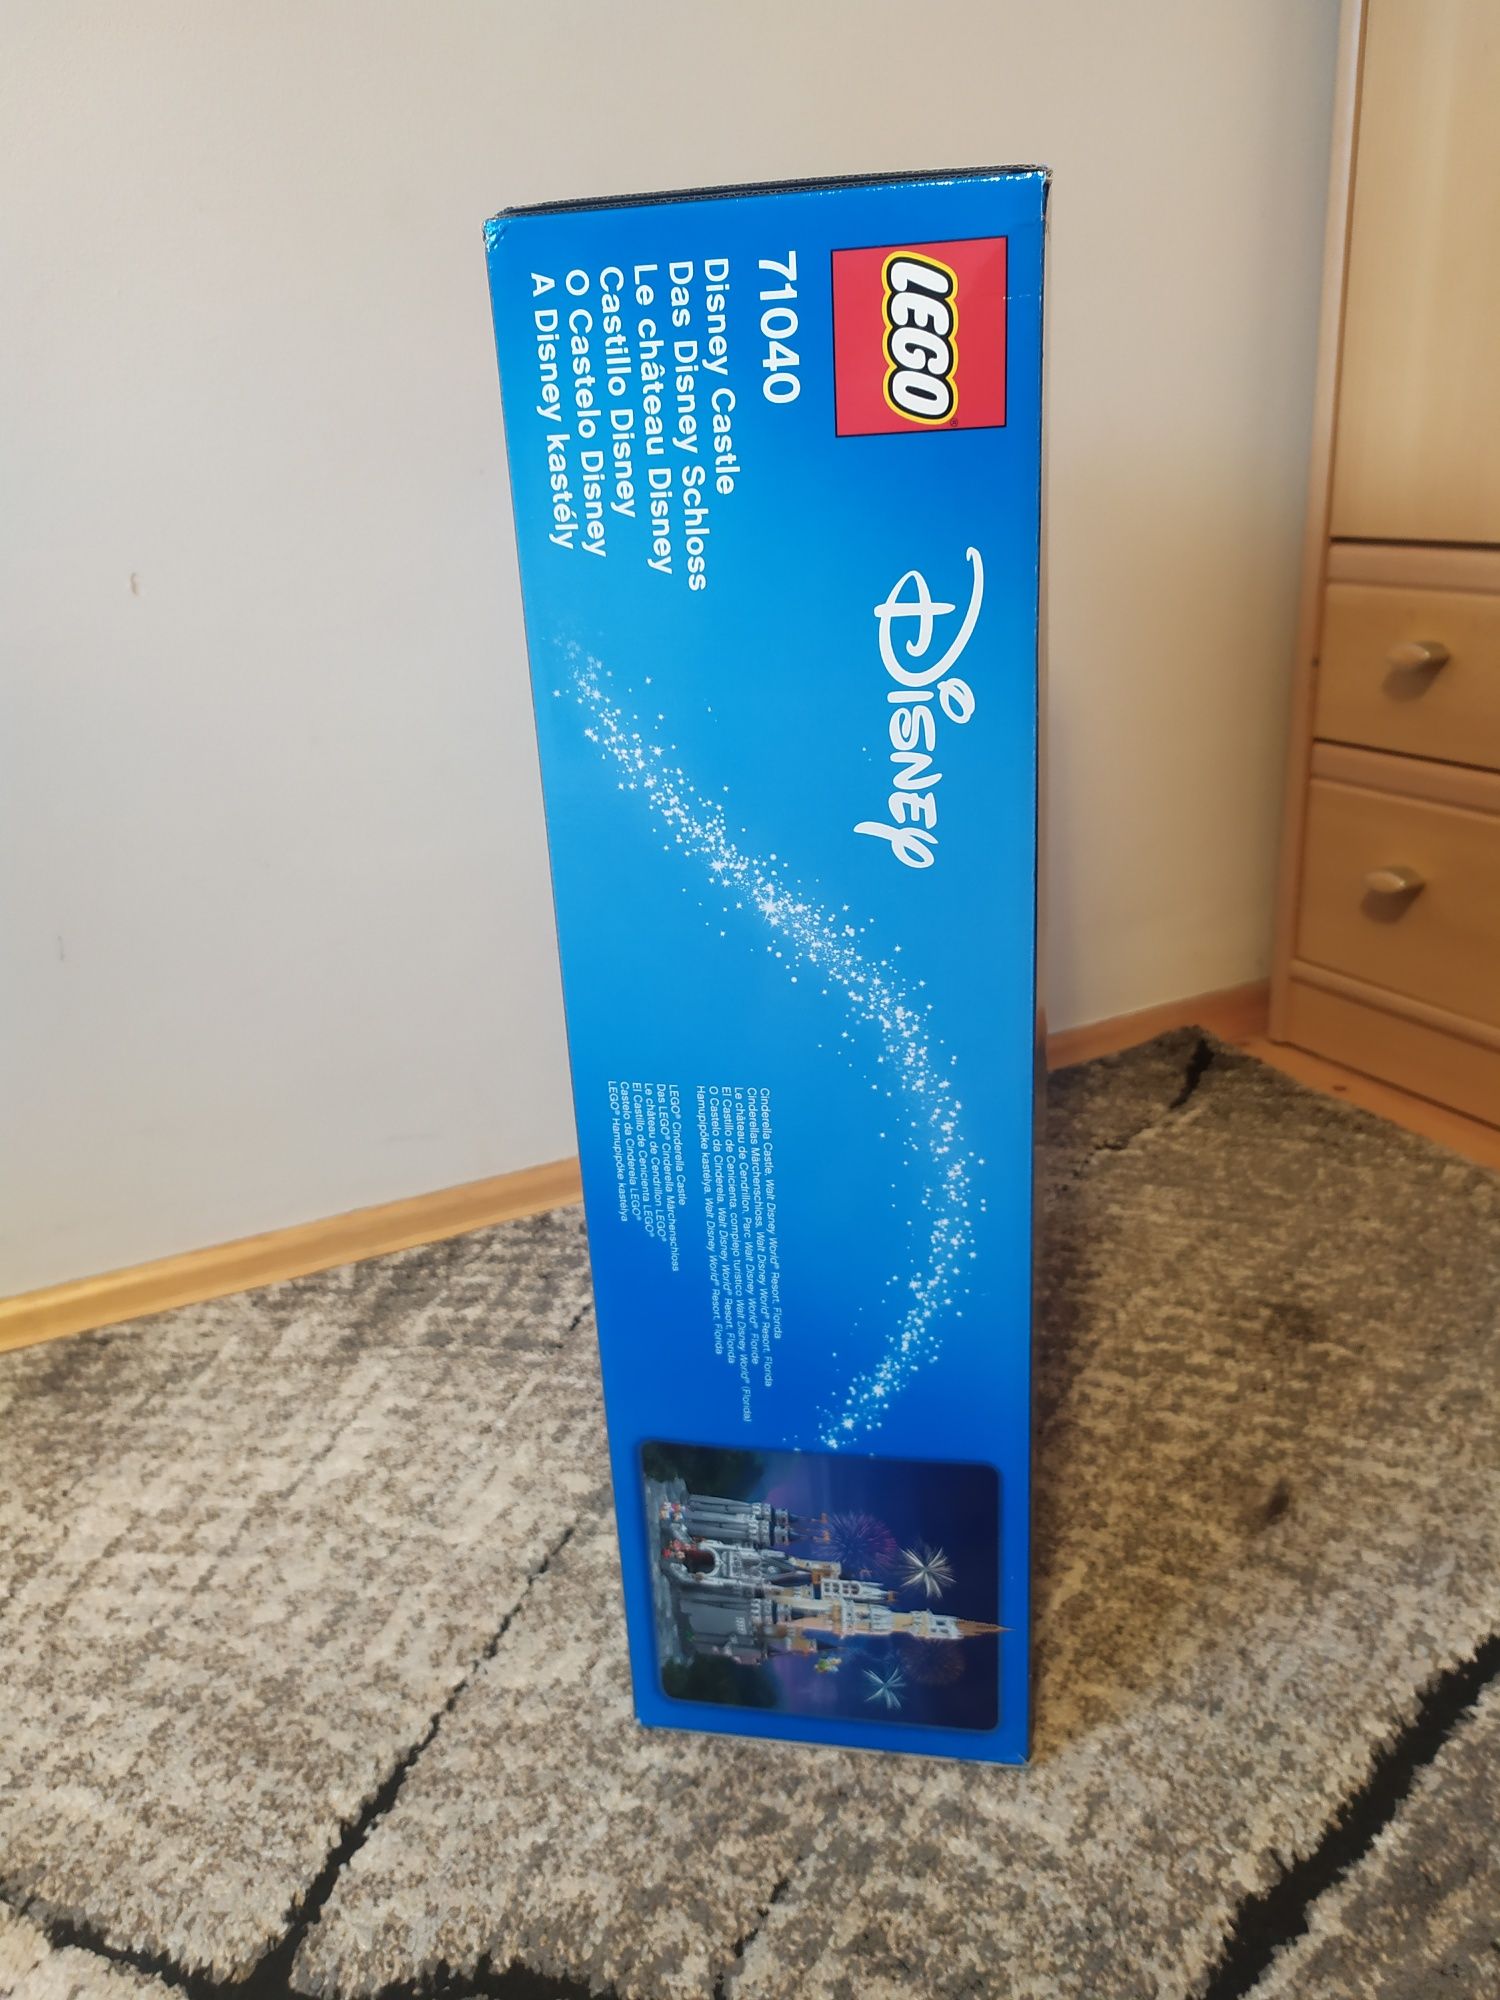 Nowe LEGO 71040 Disney - Zamek Disneya